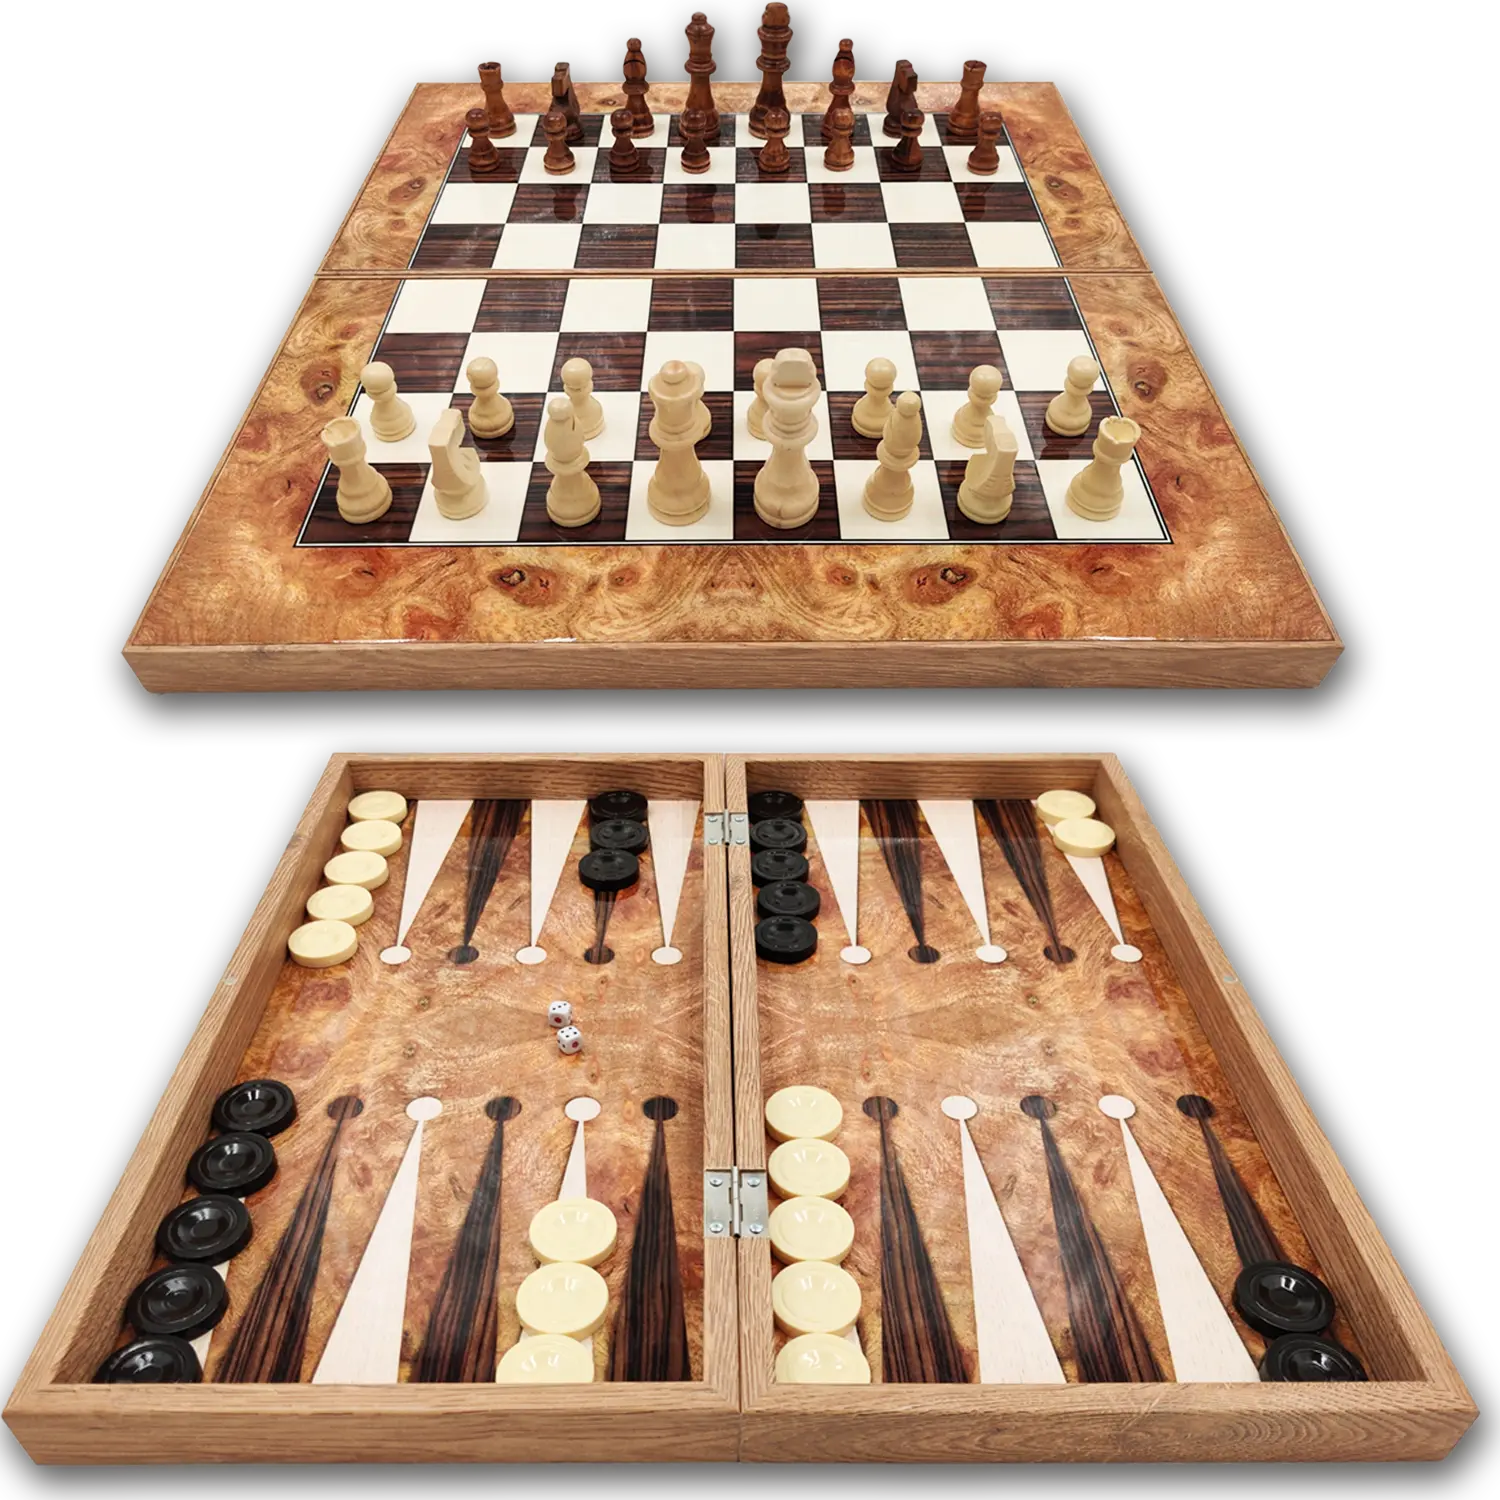 Rosékleurig backgammon bord inclusief houten schaakstukken